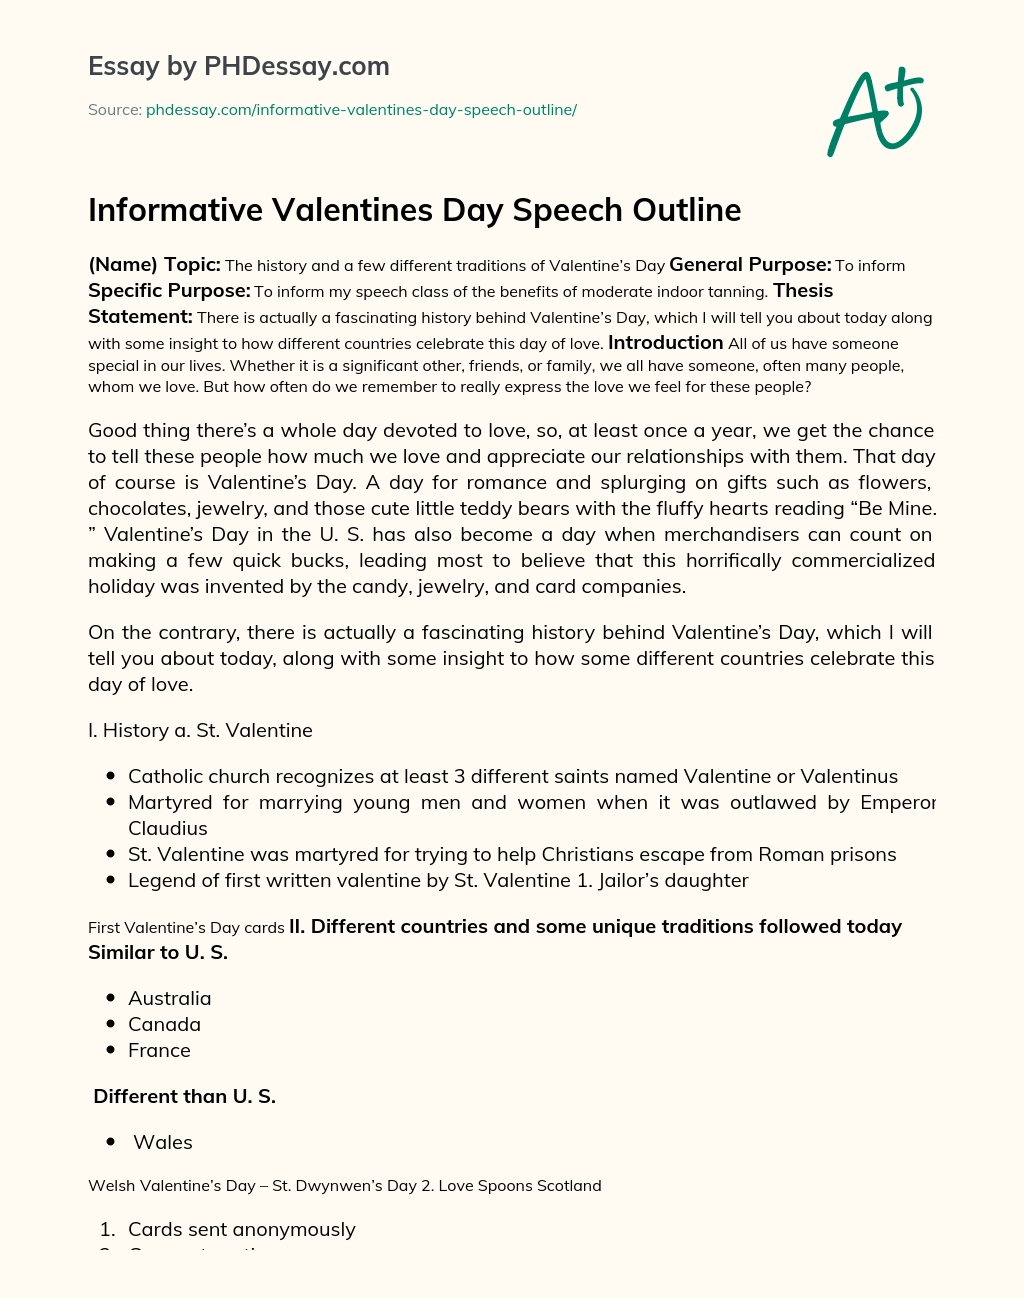 Informative Valentines Day Speech Outline essay